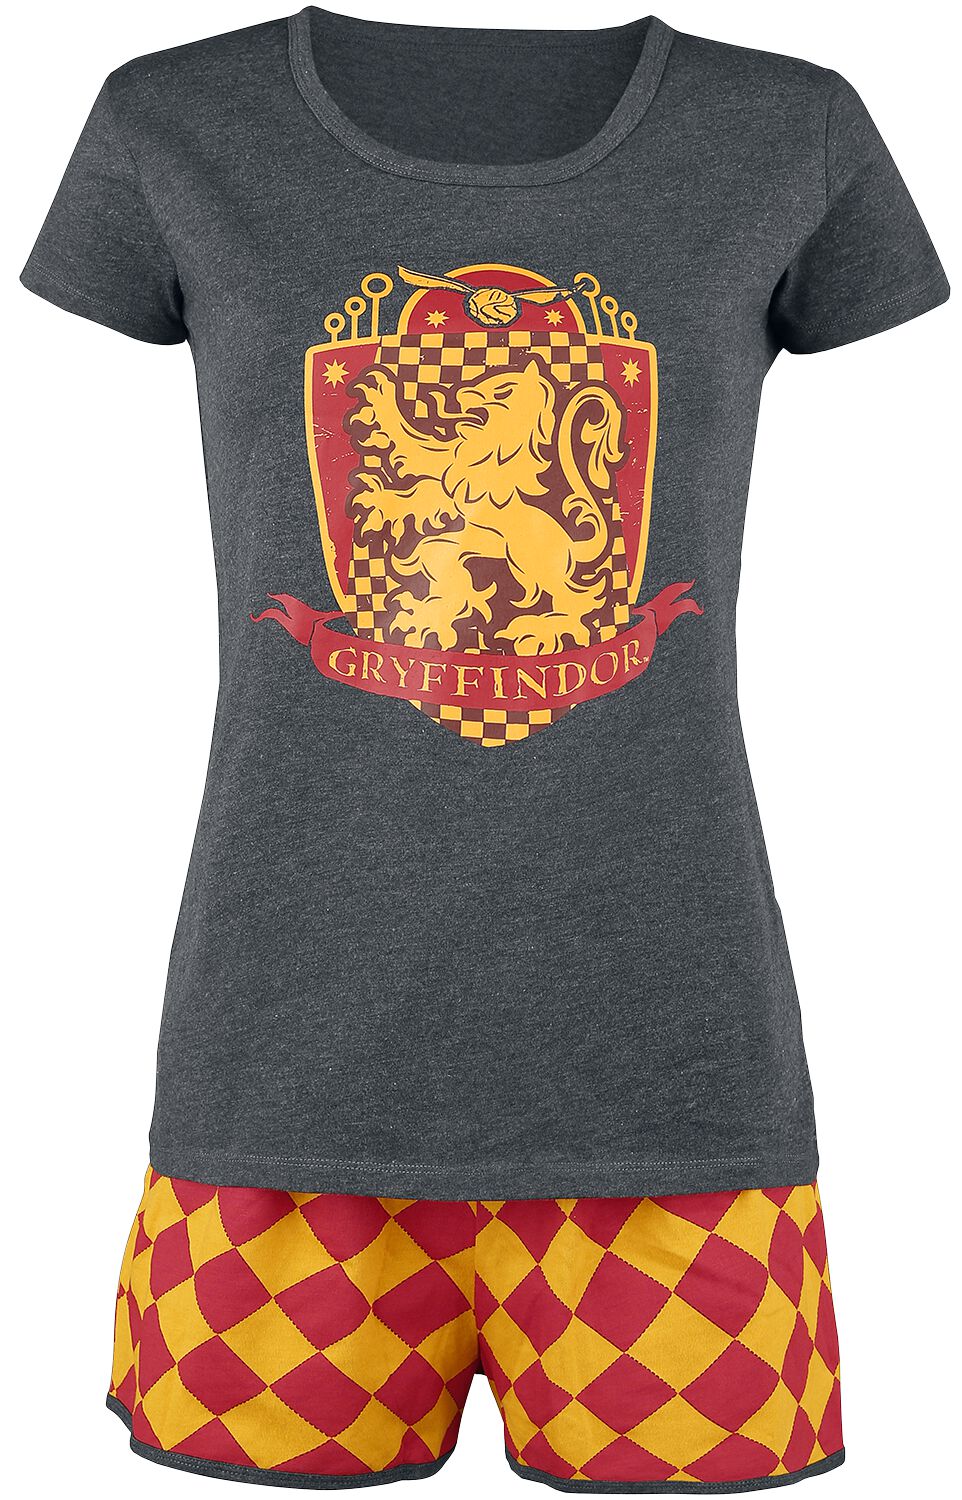 Harry Potter Schlafanzug - Gryffindor Quidditch - XS bis 5XL - für Damen - Größe 3XL - grau/rot/gelb  - EMP exklusives Merchandise!